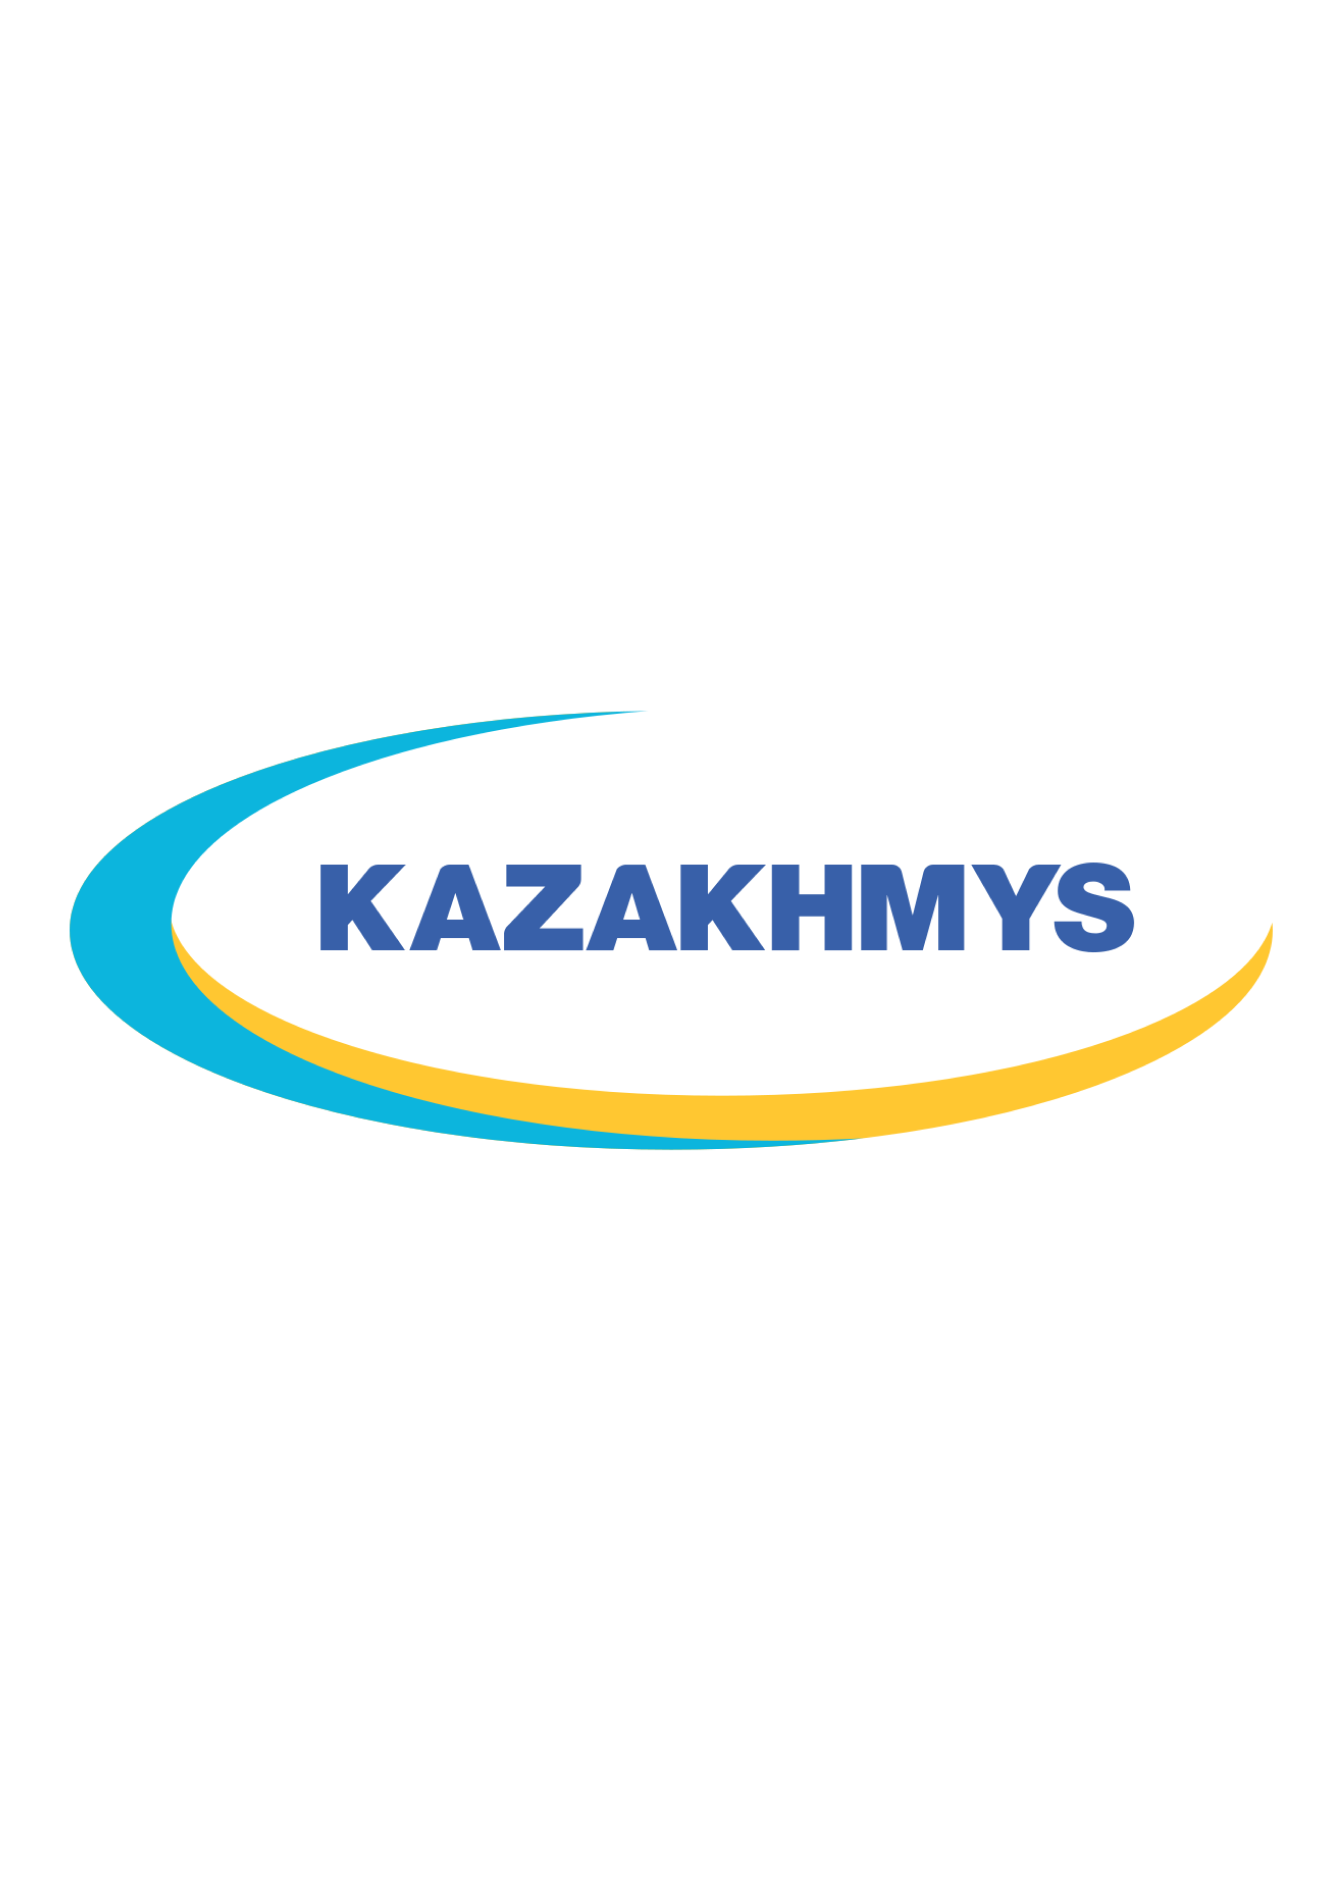 Kazakhmys   Patron Zhezkazgan, since 2020